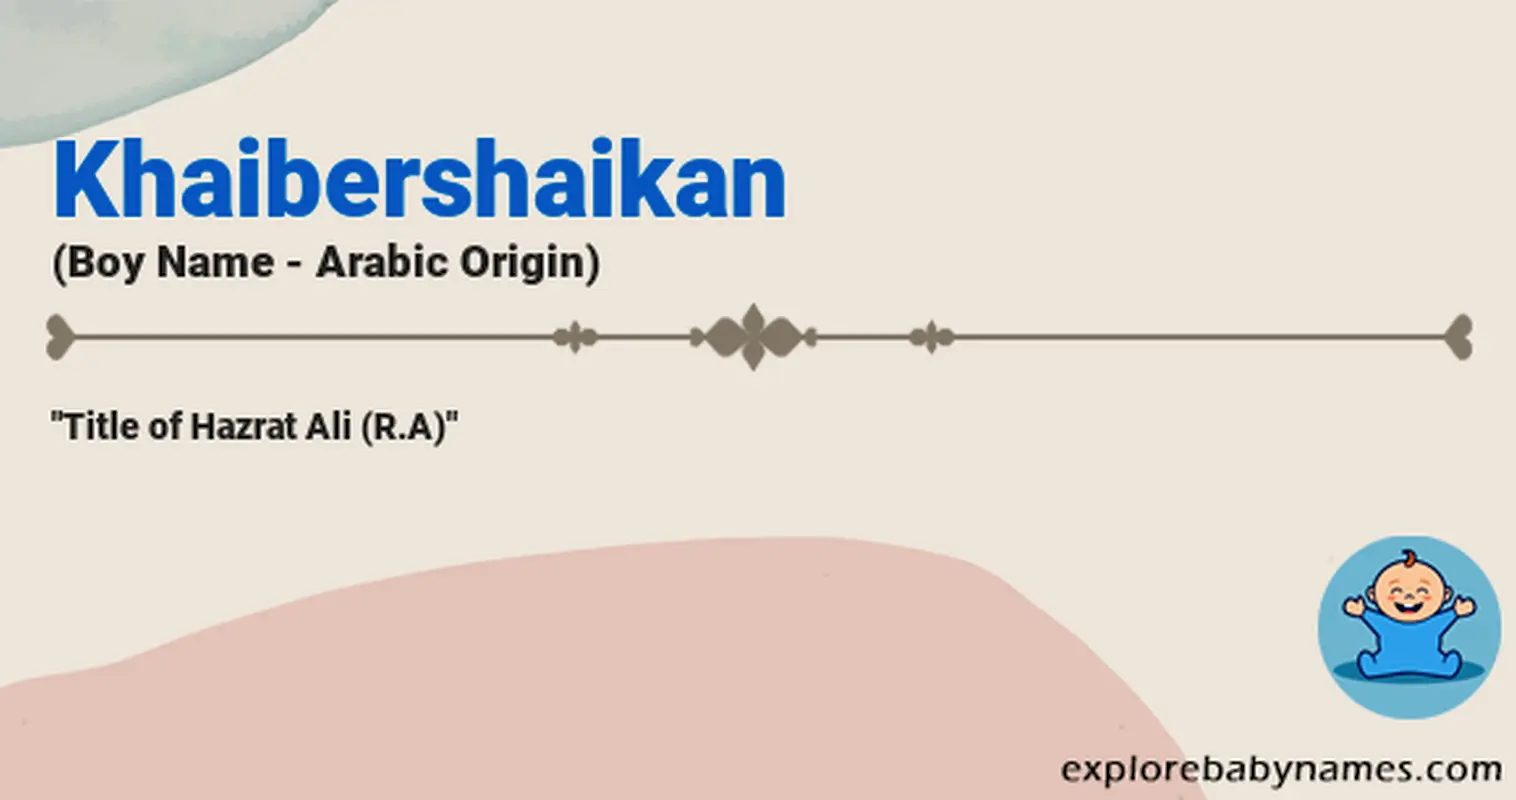 Meaning of Khaibershaikan